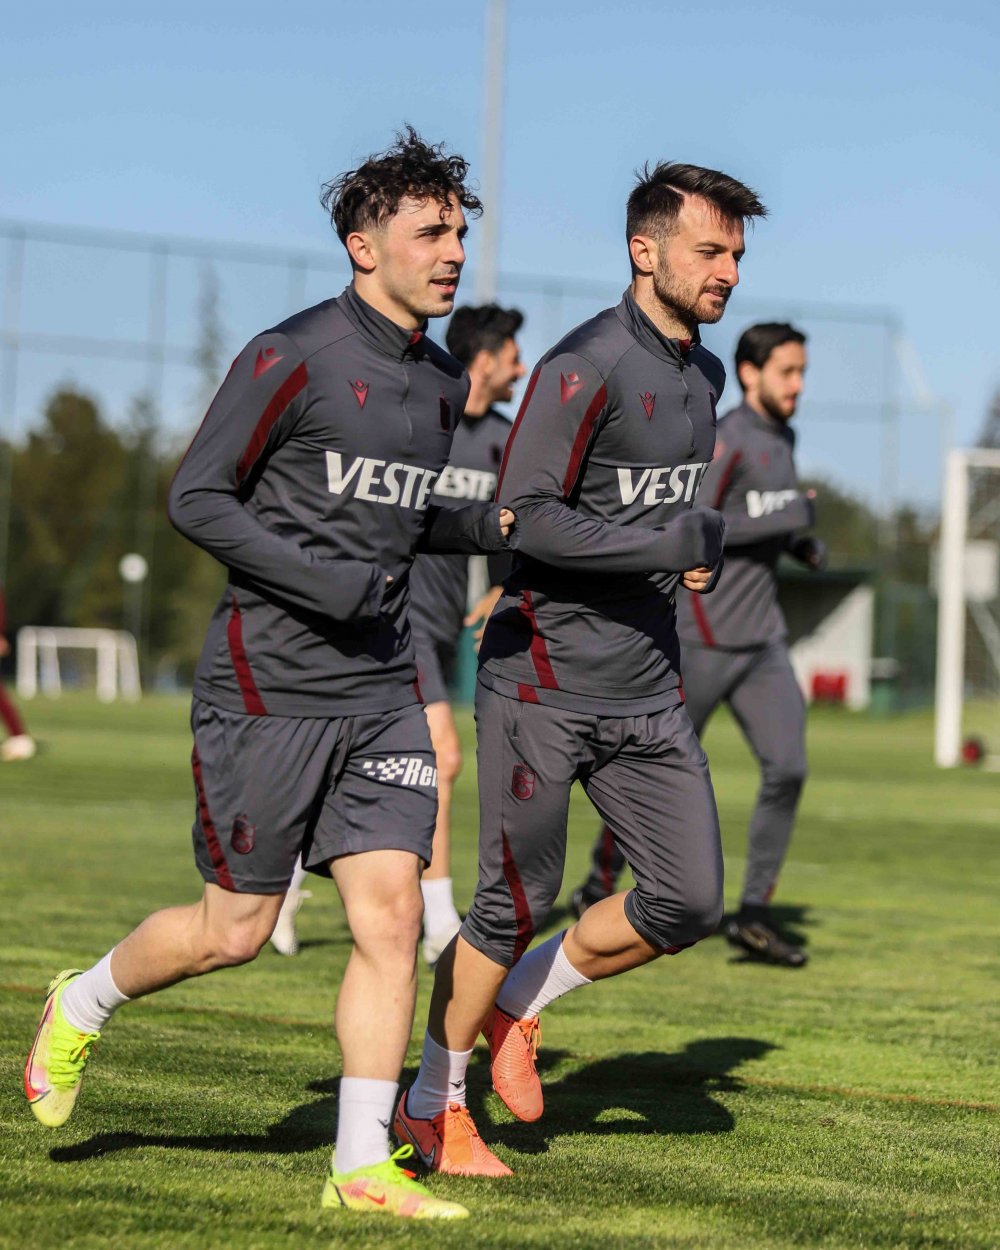 Trabzonspor Kayserispor hazırlıklarına başladı